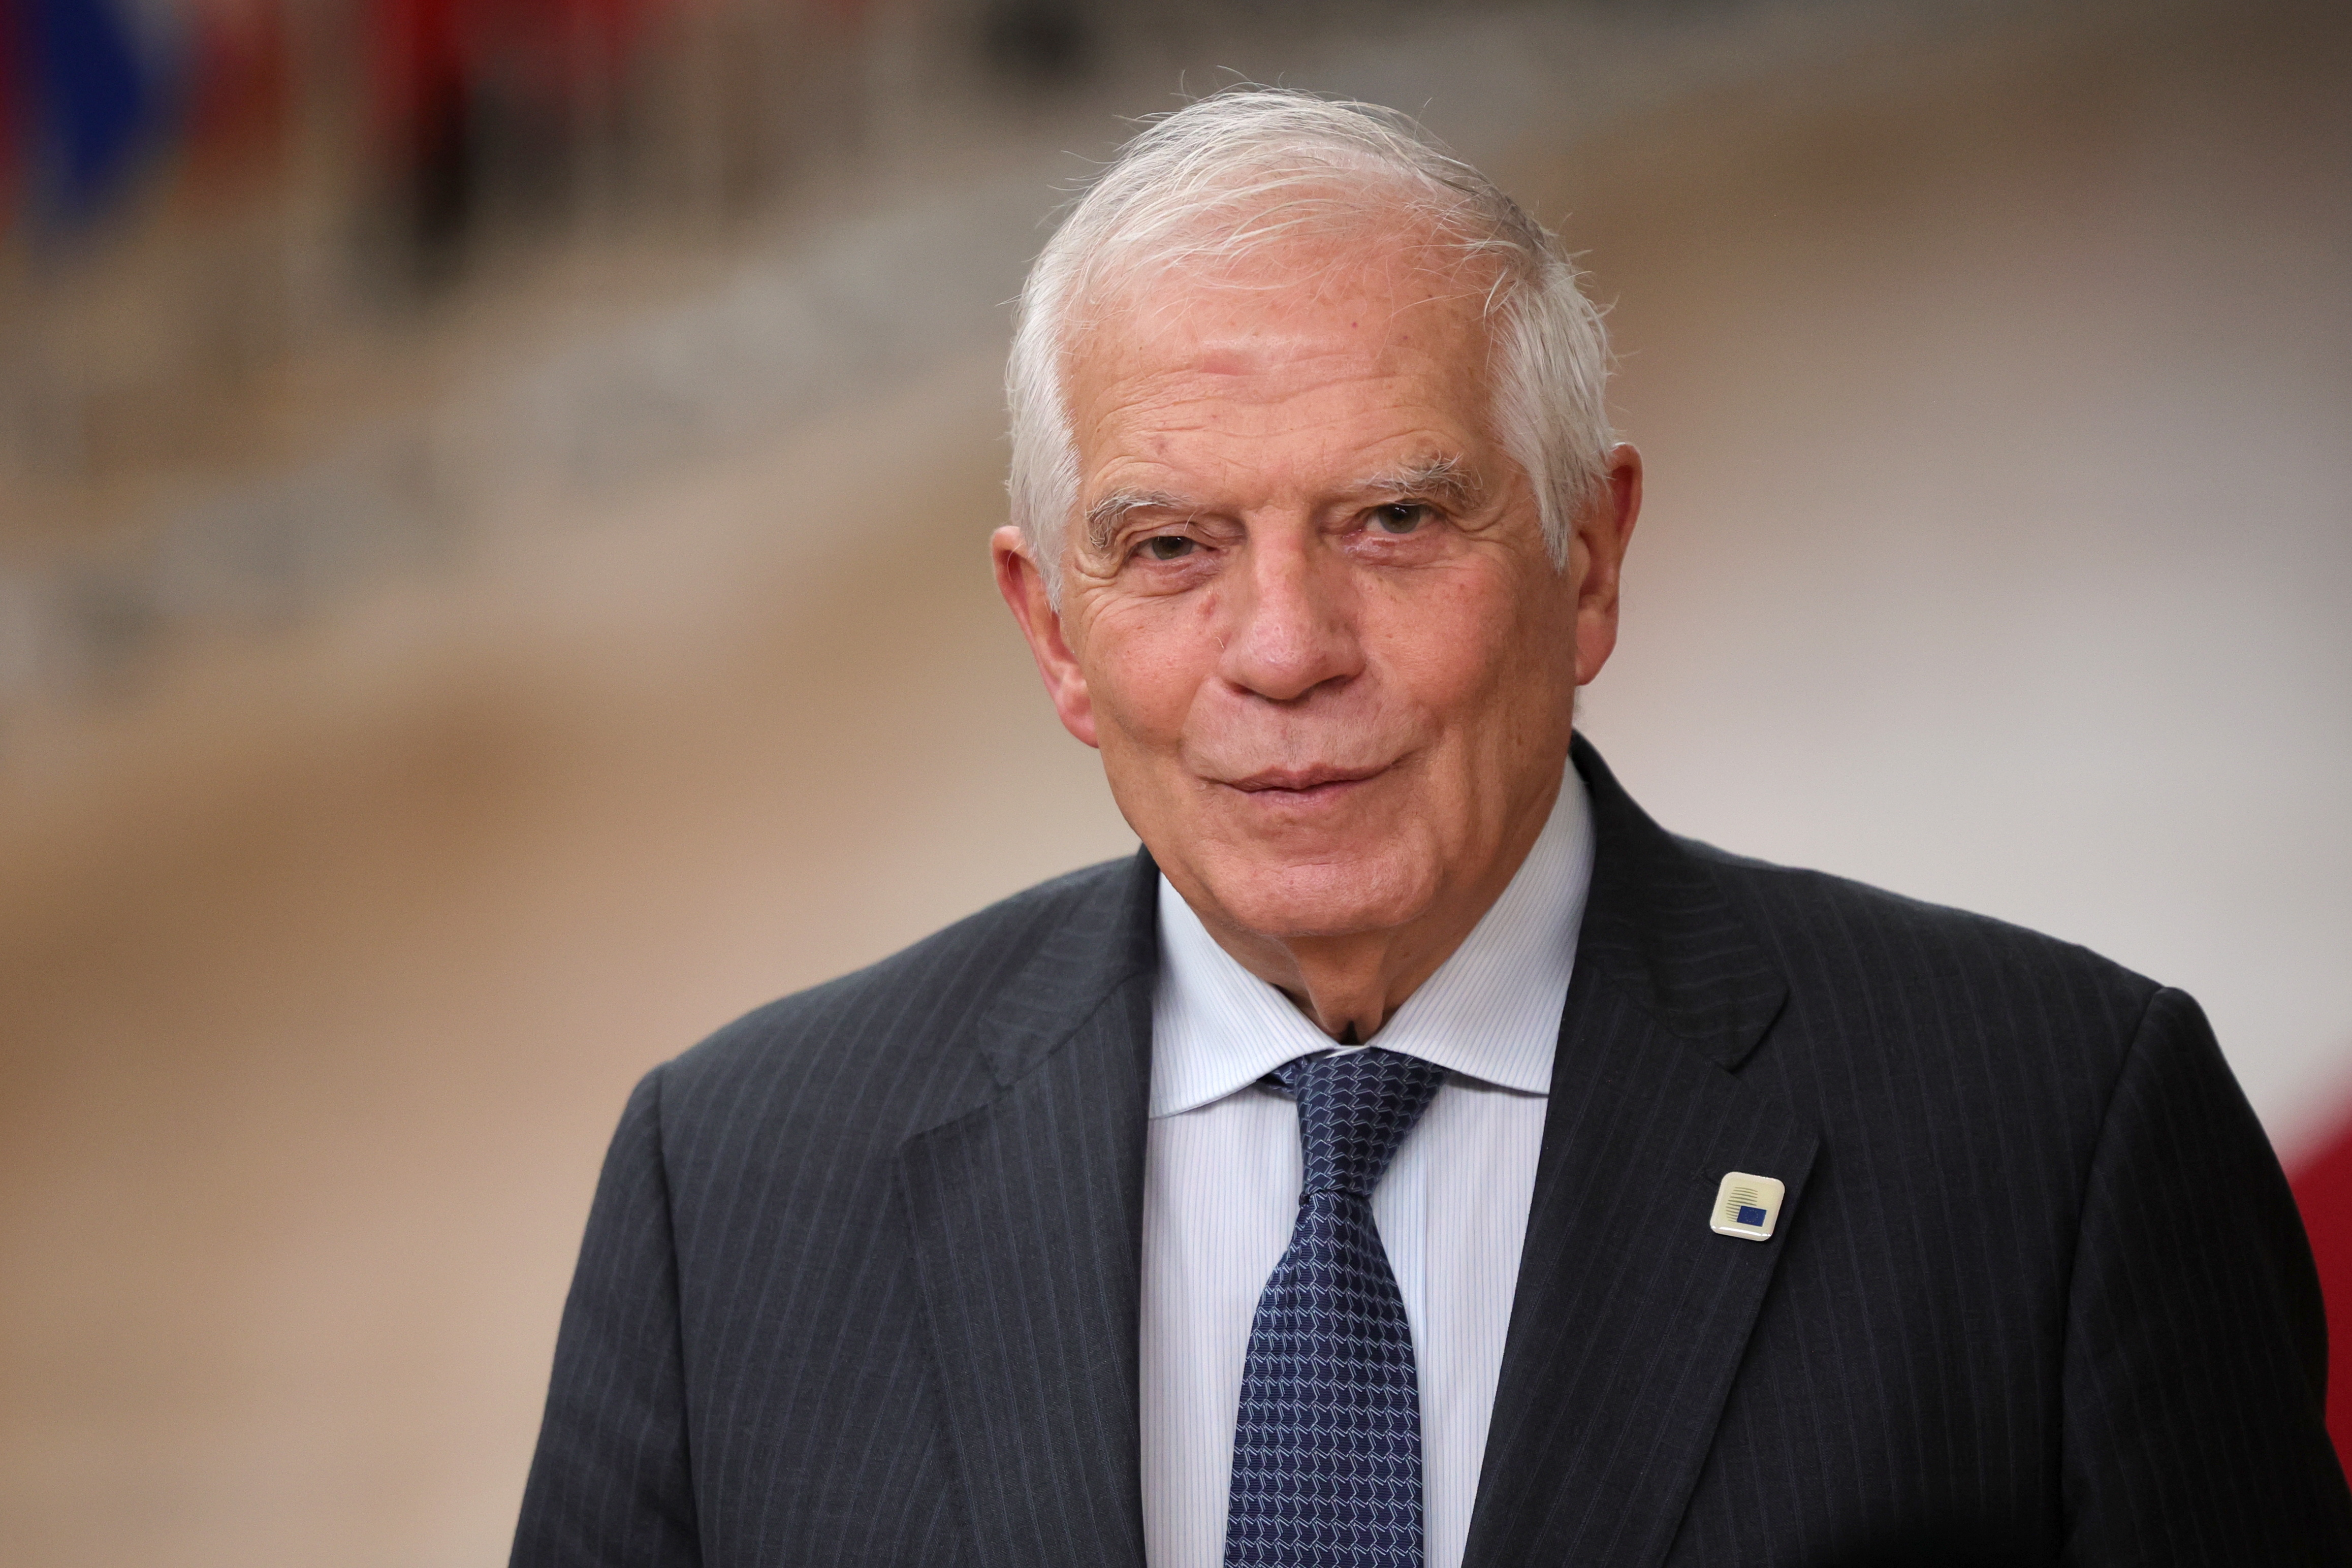 Josep Borrell, el alto representante de la Unión Europea para Asuntos Exteriores y Políticas de Seguridad. (Foto Prensa Libre: EFE)

